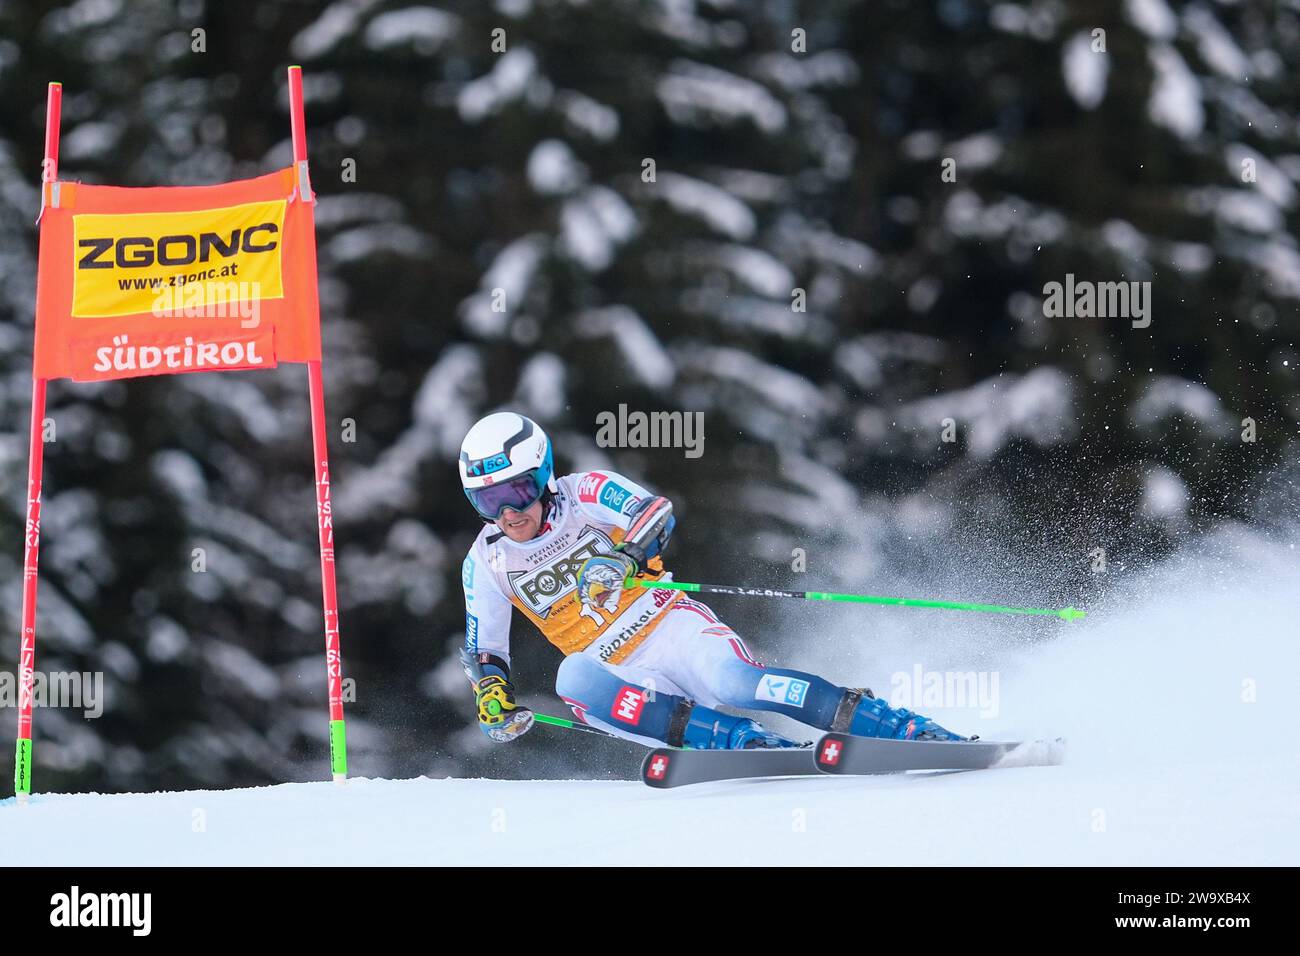 Rasmussen Windingstad (NOR) gareggia durante la Coppa del mondo di sci alpino Audi FIS, MenÕs Giant Slalom Race sulla pista Gran Risa, alta Badia il 17 dicembre, Foto Stock